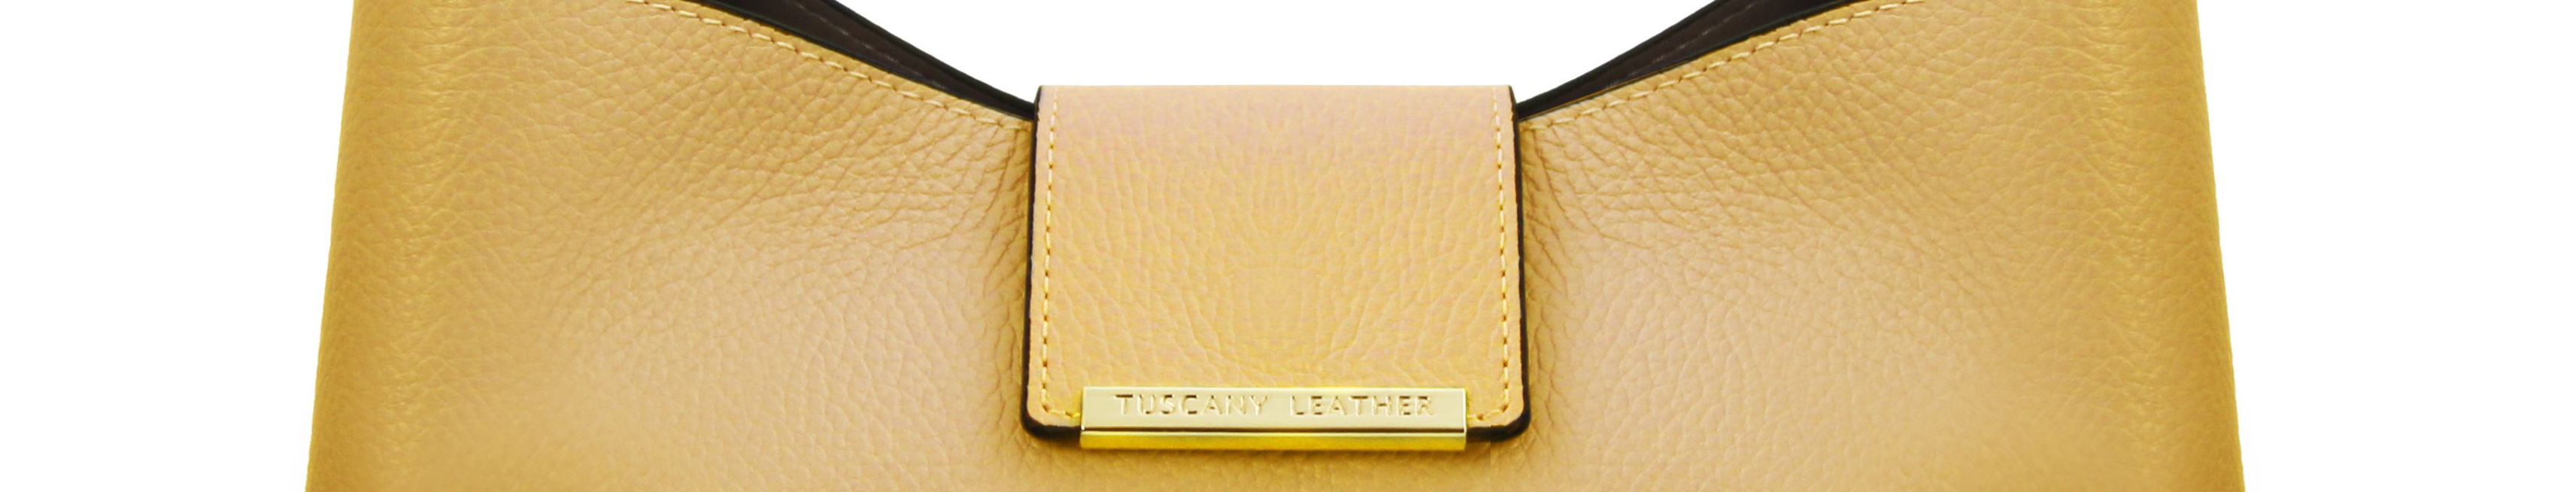 Neue Tuscany Leather Kollektion